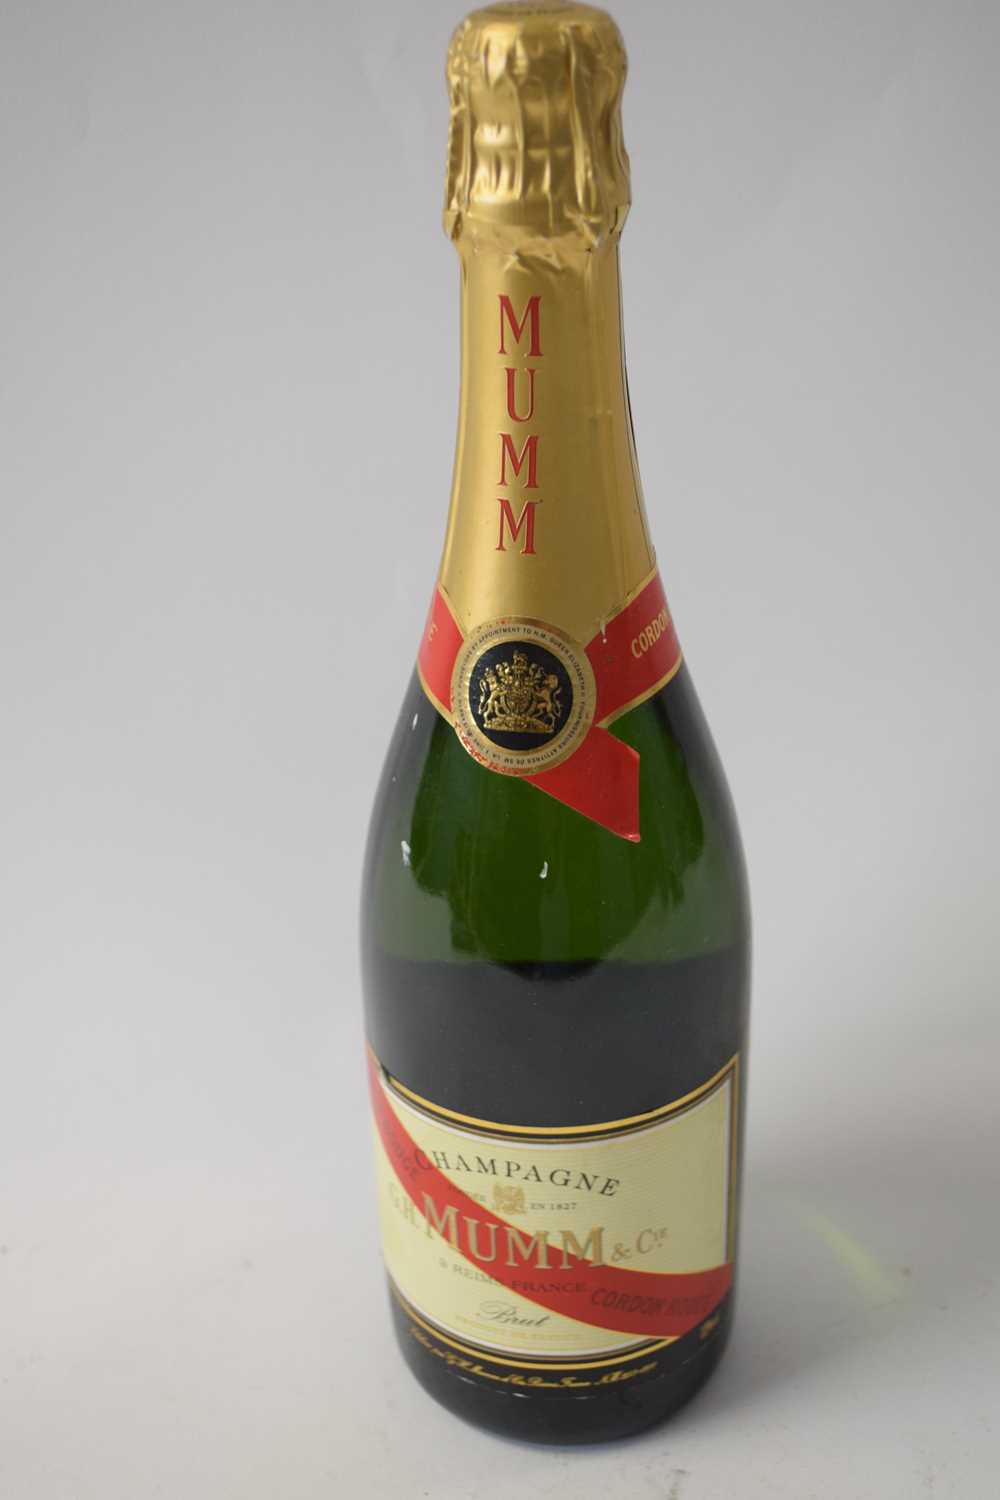 Lot 67 - Mumm Champagne, 1 bottle